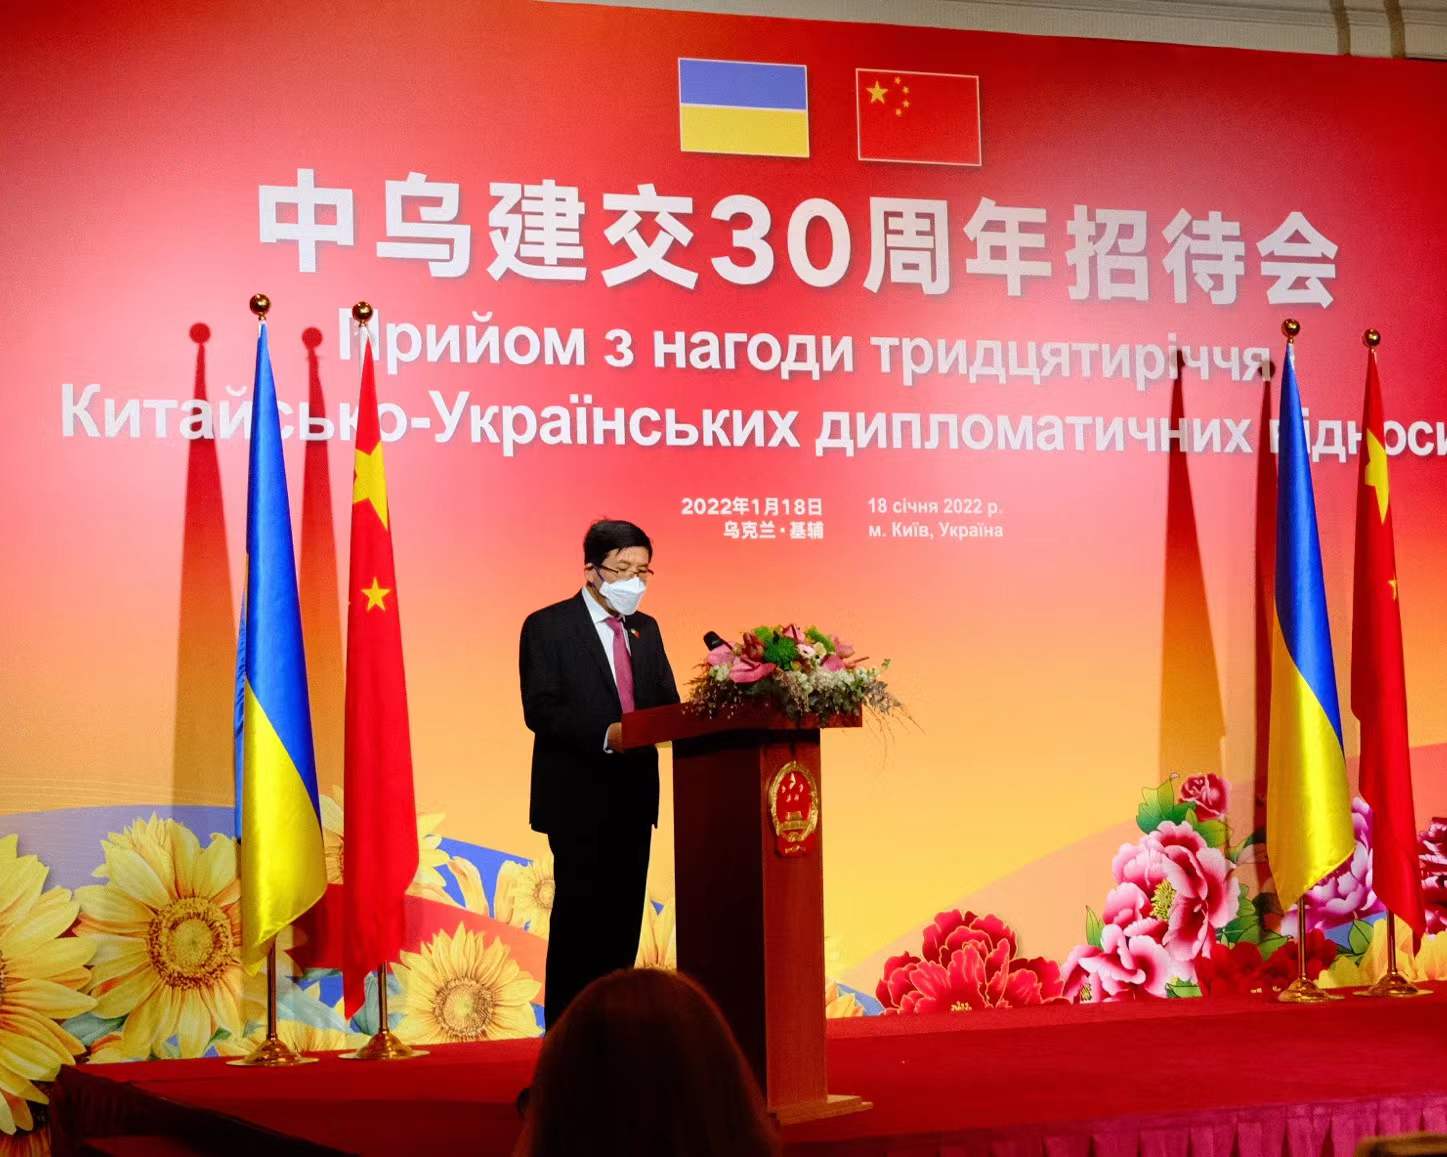 У Києві відбувся прийом з нагоди 30-річчя встановлення дипломатичних відносин між КНР та Україною